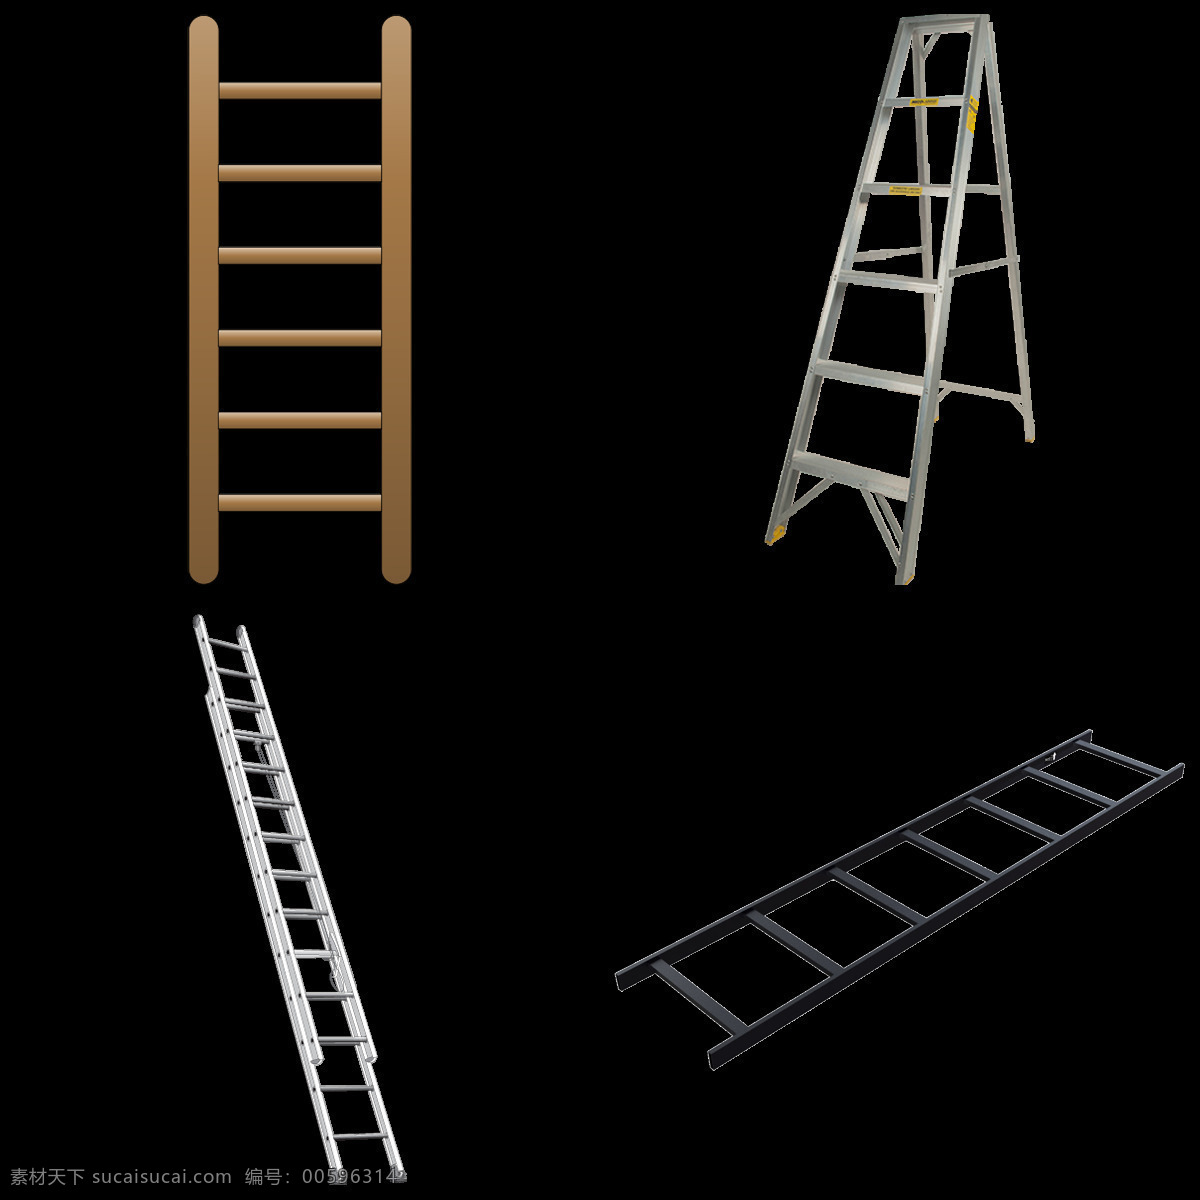 各种 梯子 免 抠 透明 图 层 梯子卡通图片 叠梯子 翻墙梯子 吊梯子 铁梯子 架梯子 创意梯子 长梯子 梯子素材 木头梯子 木梯子 竹梯子 云梯 工程梯子 折叠梯子